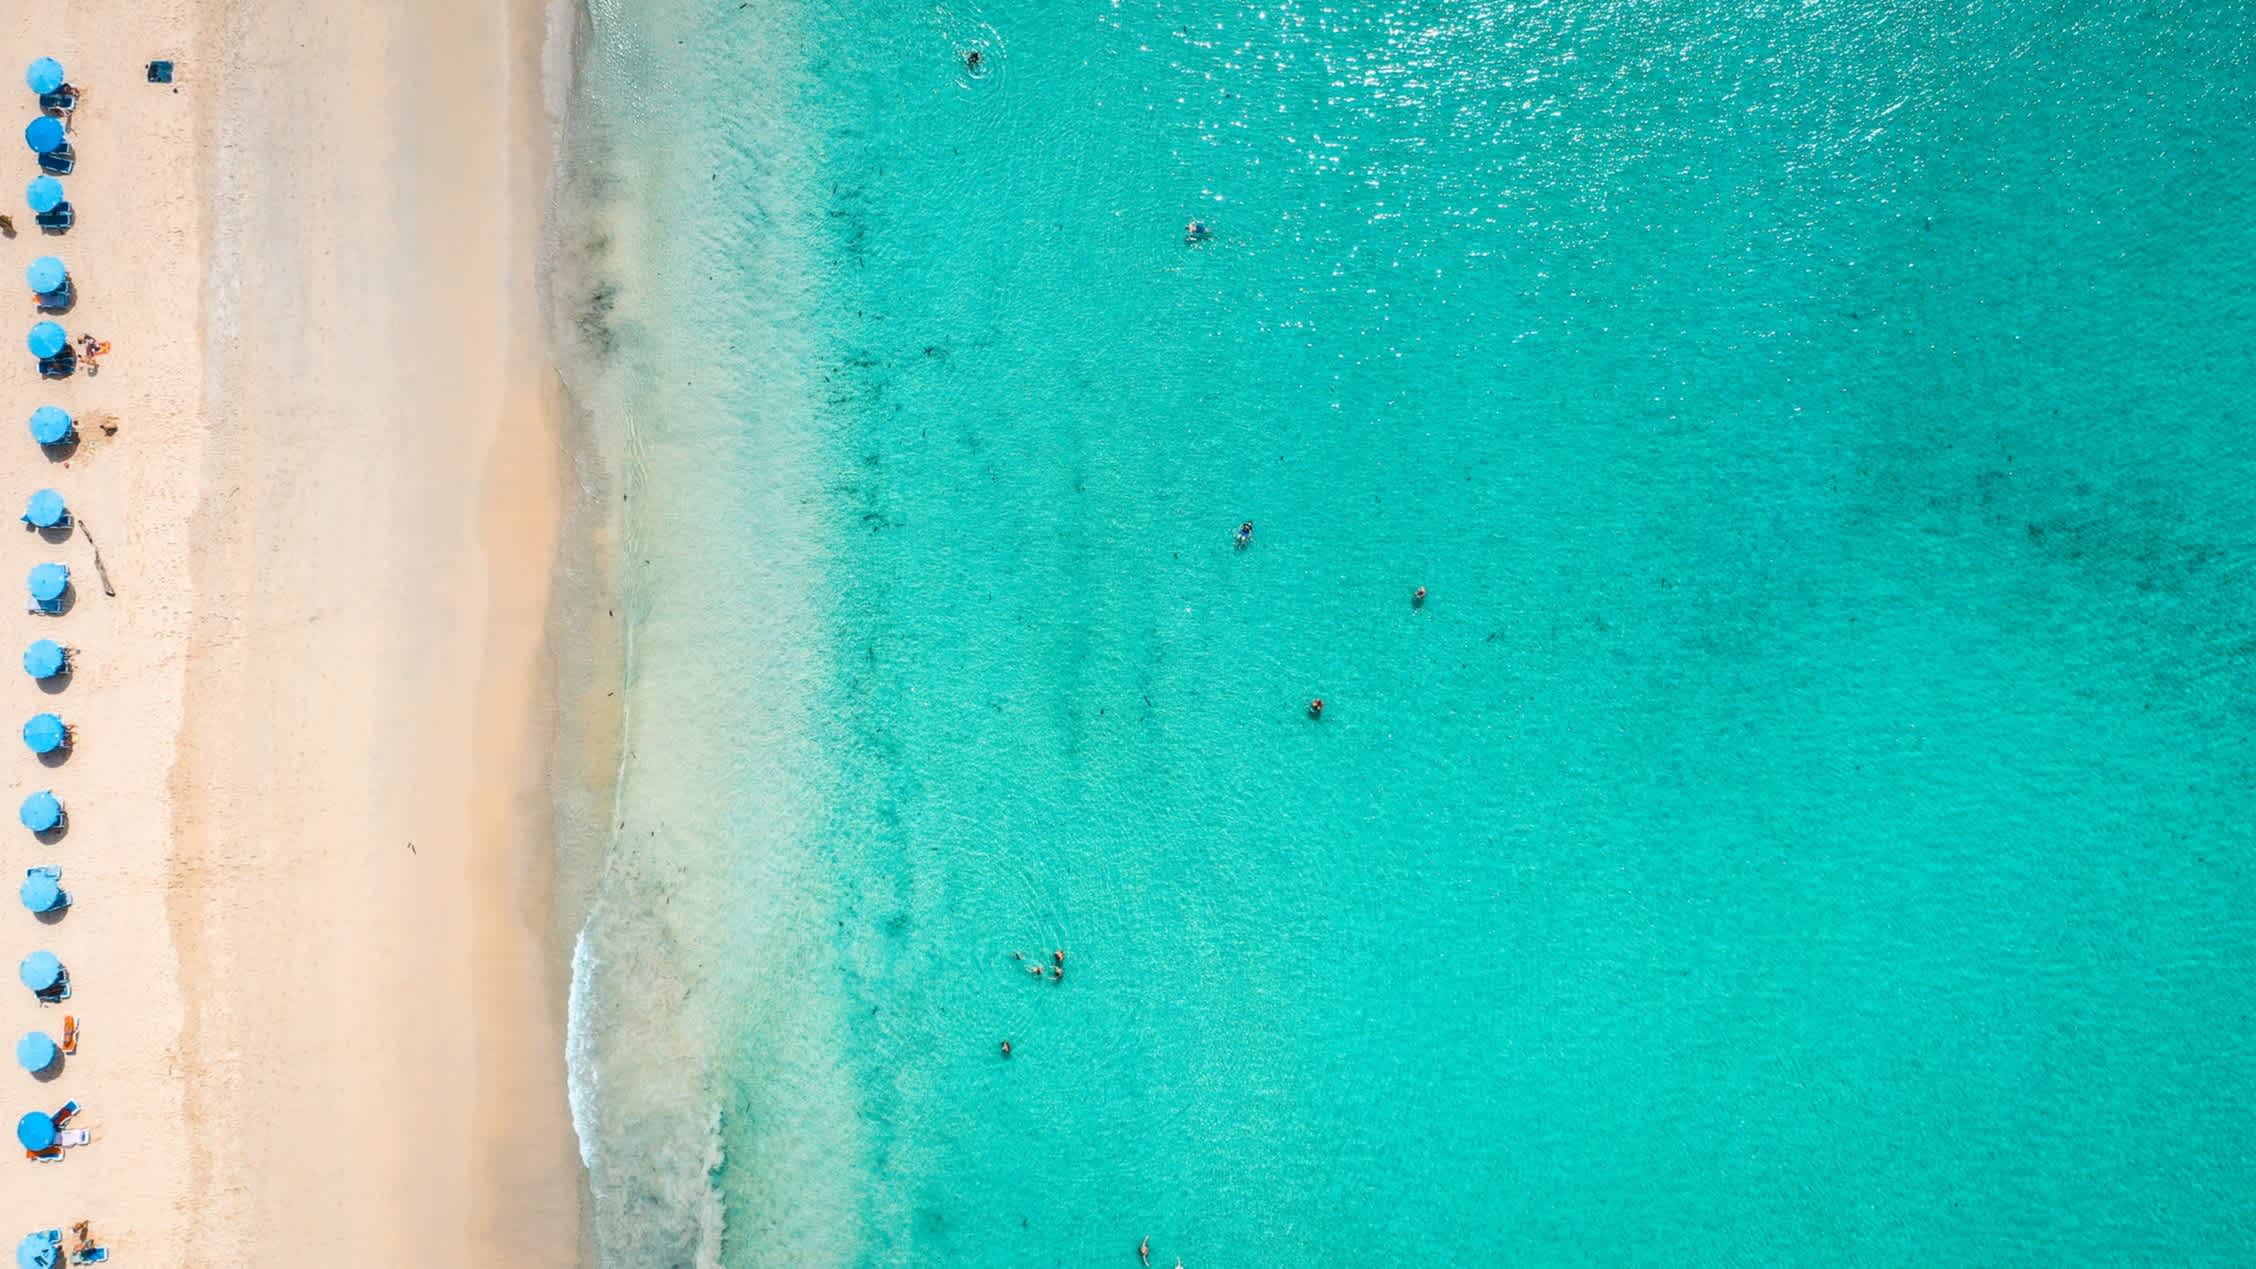 Luftaufnahme des Kata Noi Beach auf Phuket mit türkisblauem Wasser, Sandstrand und blauen Sonnenschirmen.